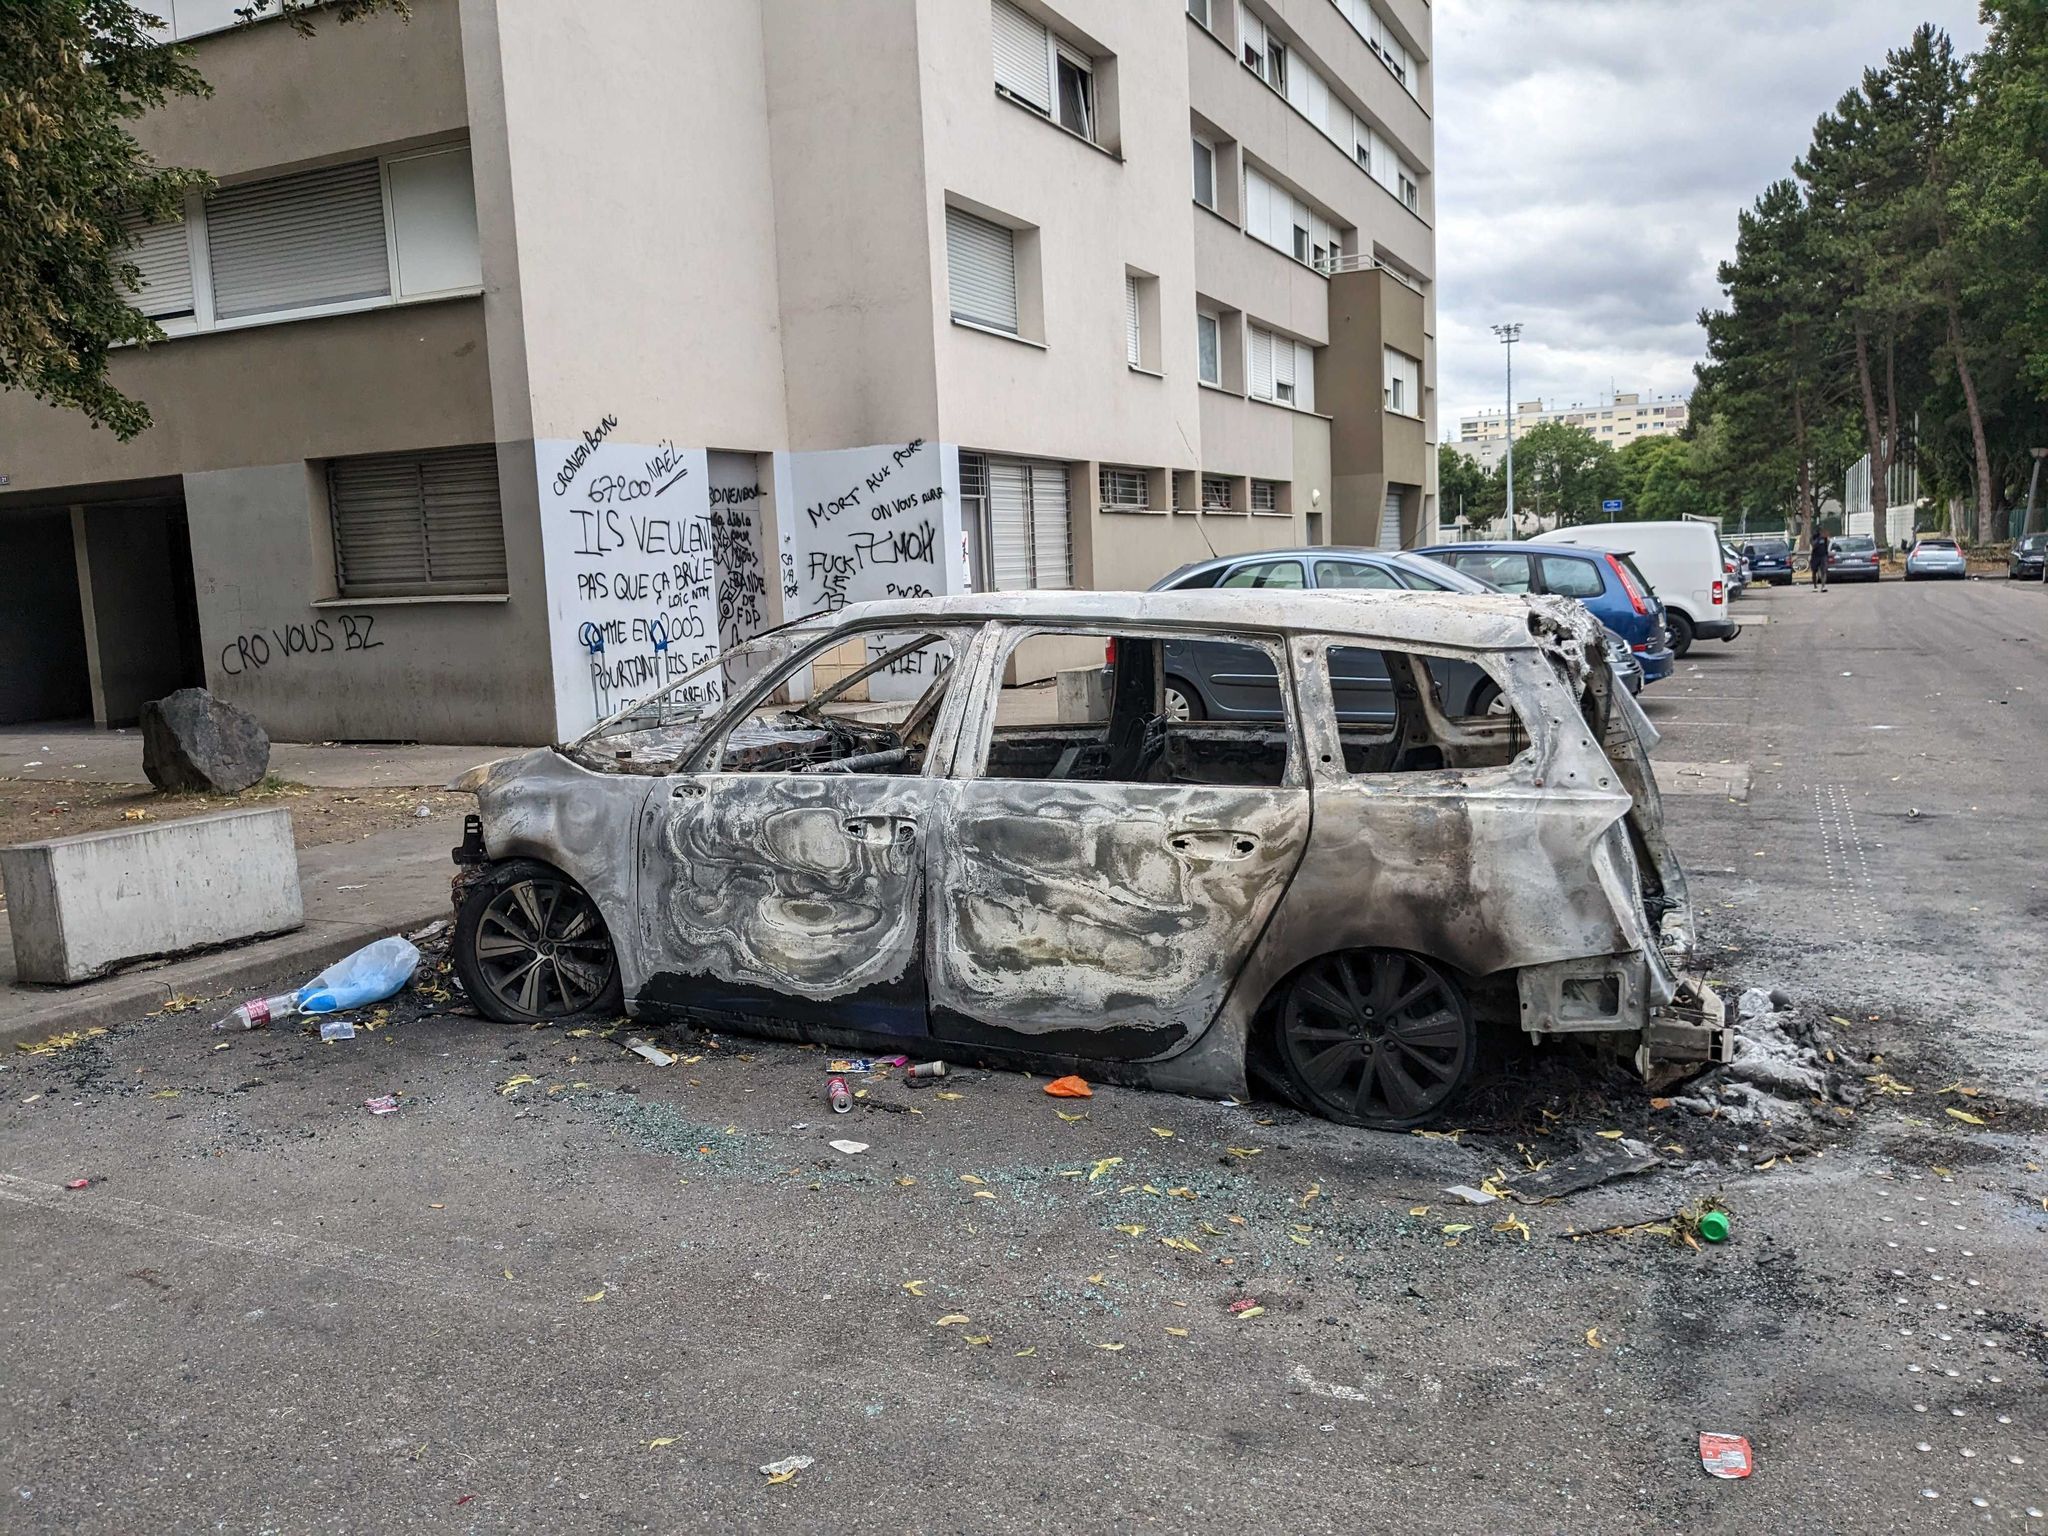 Mort de Nahel : 24 véhicules incendiés, 13 interpellations entre samedi et dimanche à Strasbourg